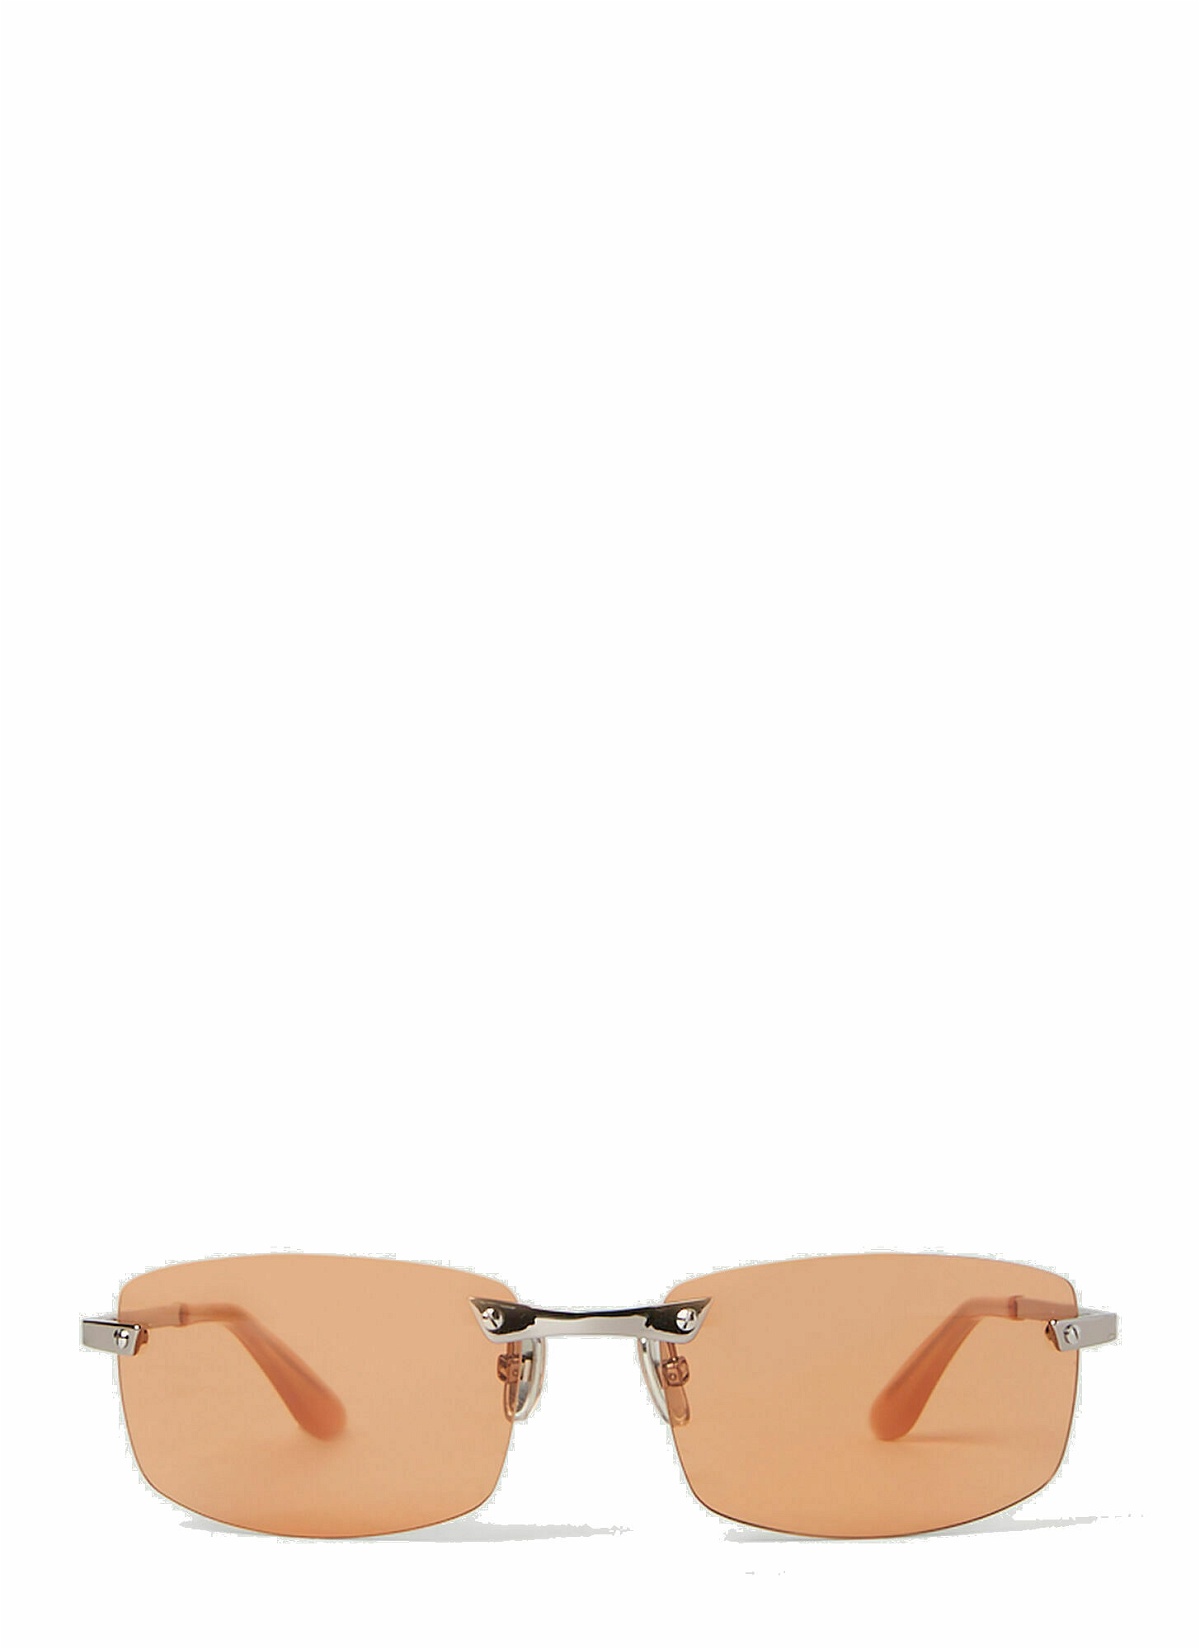 Photo: Acne Studios - Rectangular Sunglasses in Orange